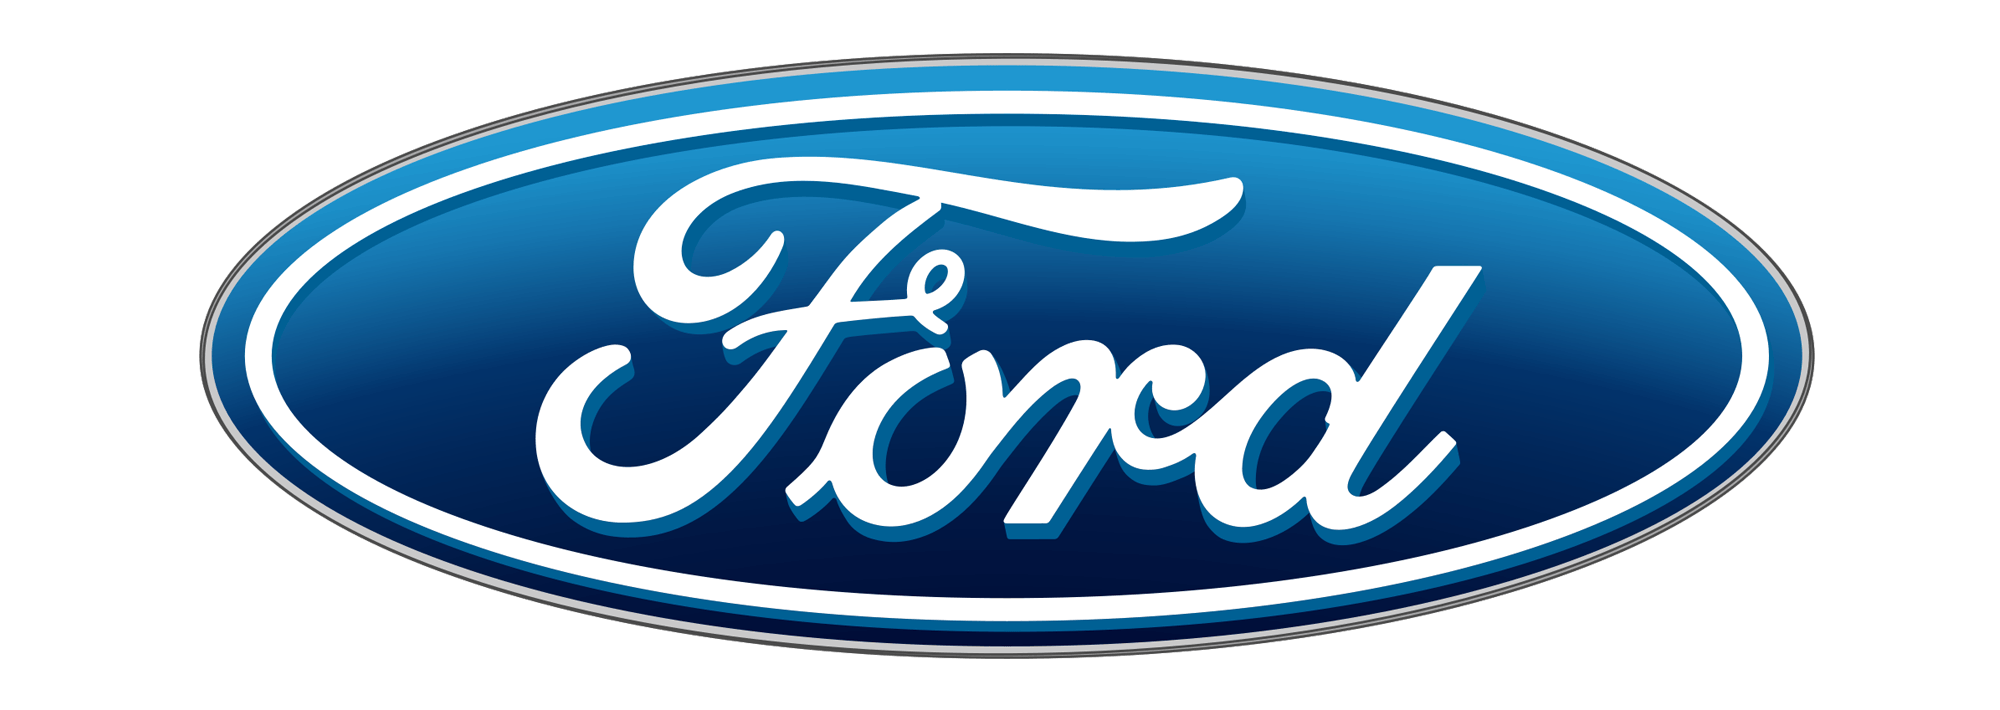 Le Logo - Le logo Ford. Les marques de voitures